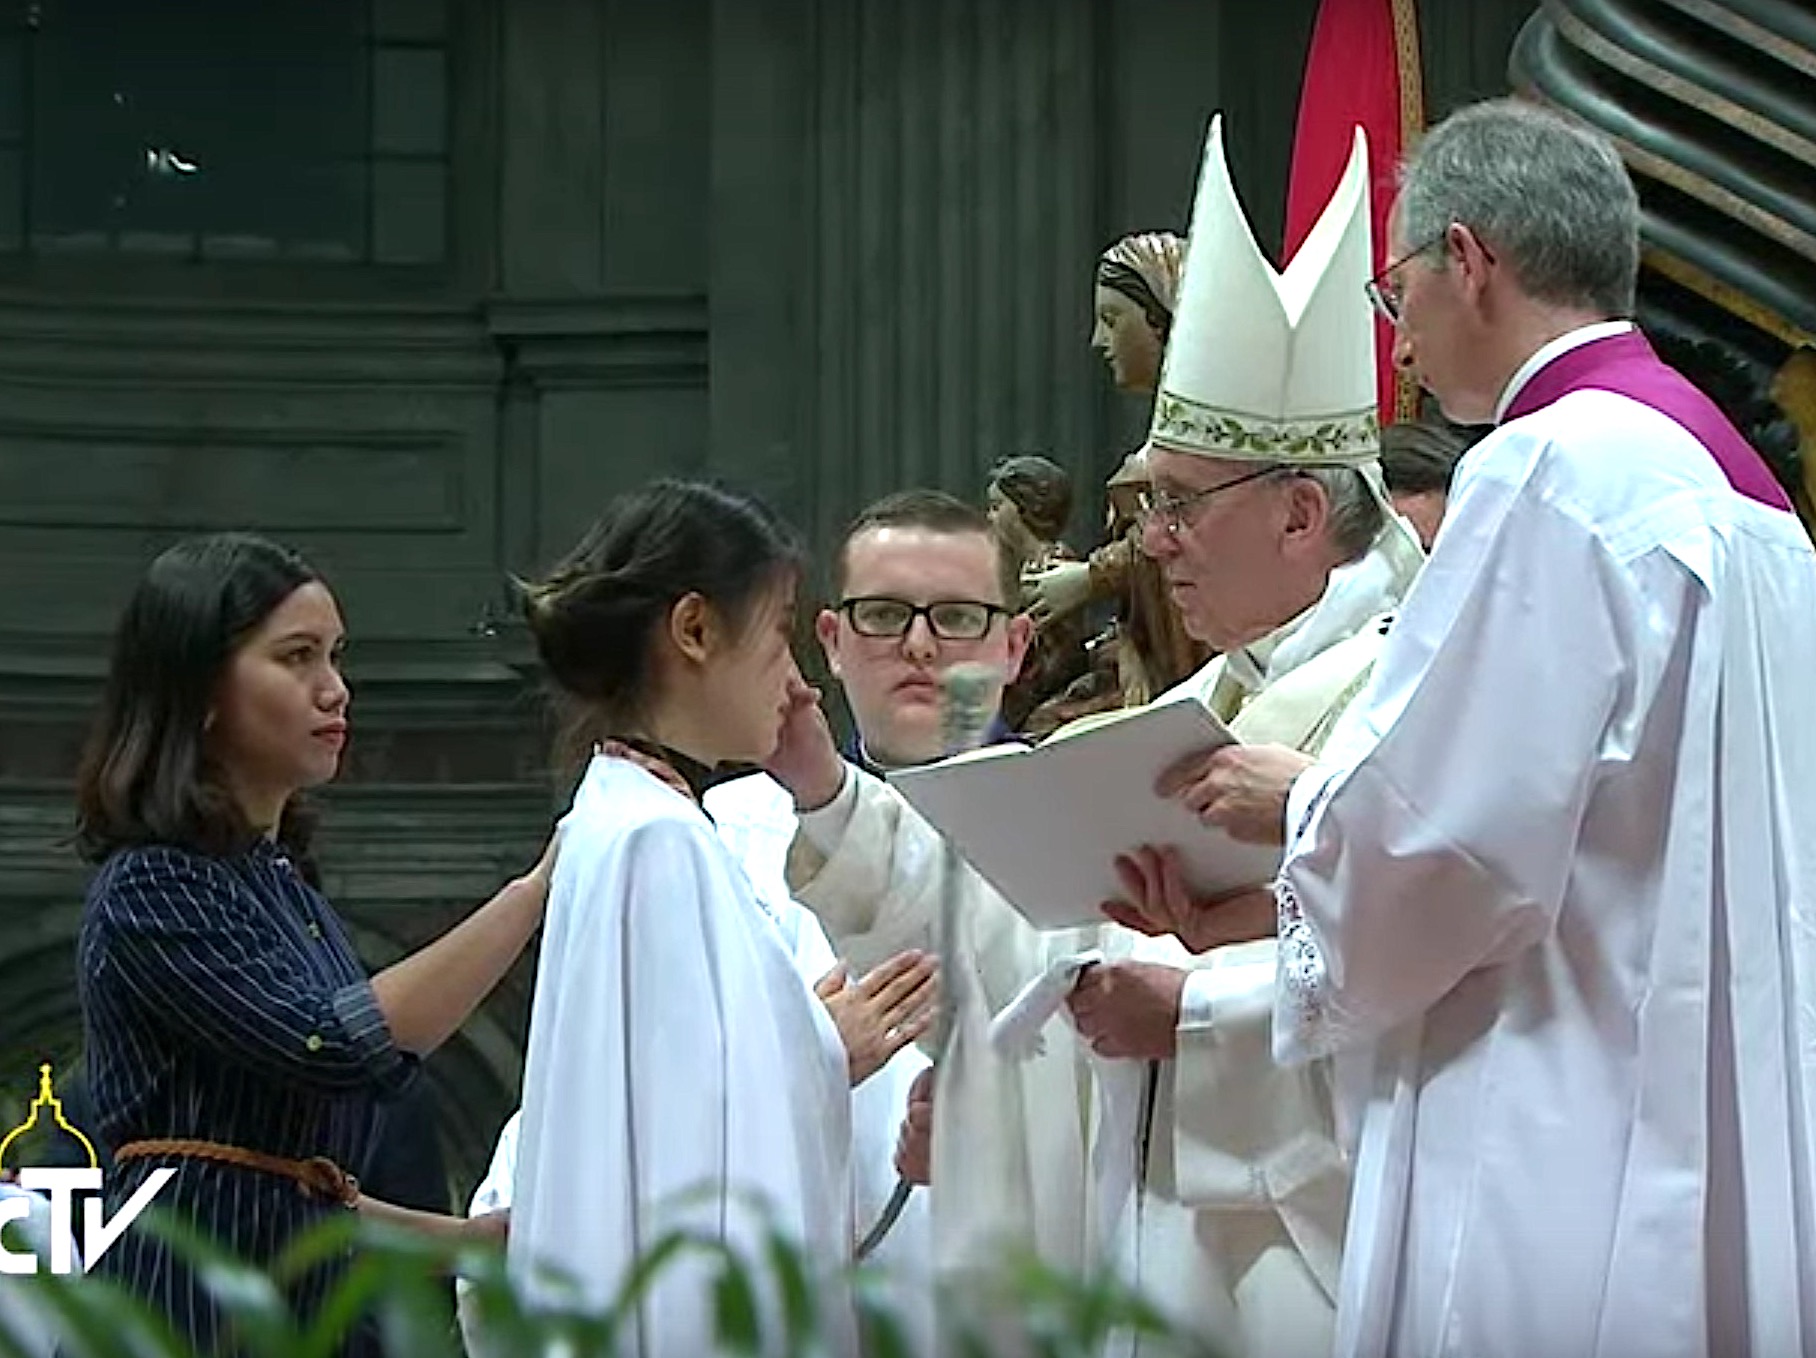 El Papa impartiendo la confirmación a una recién bautizada